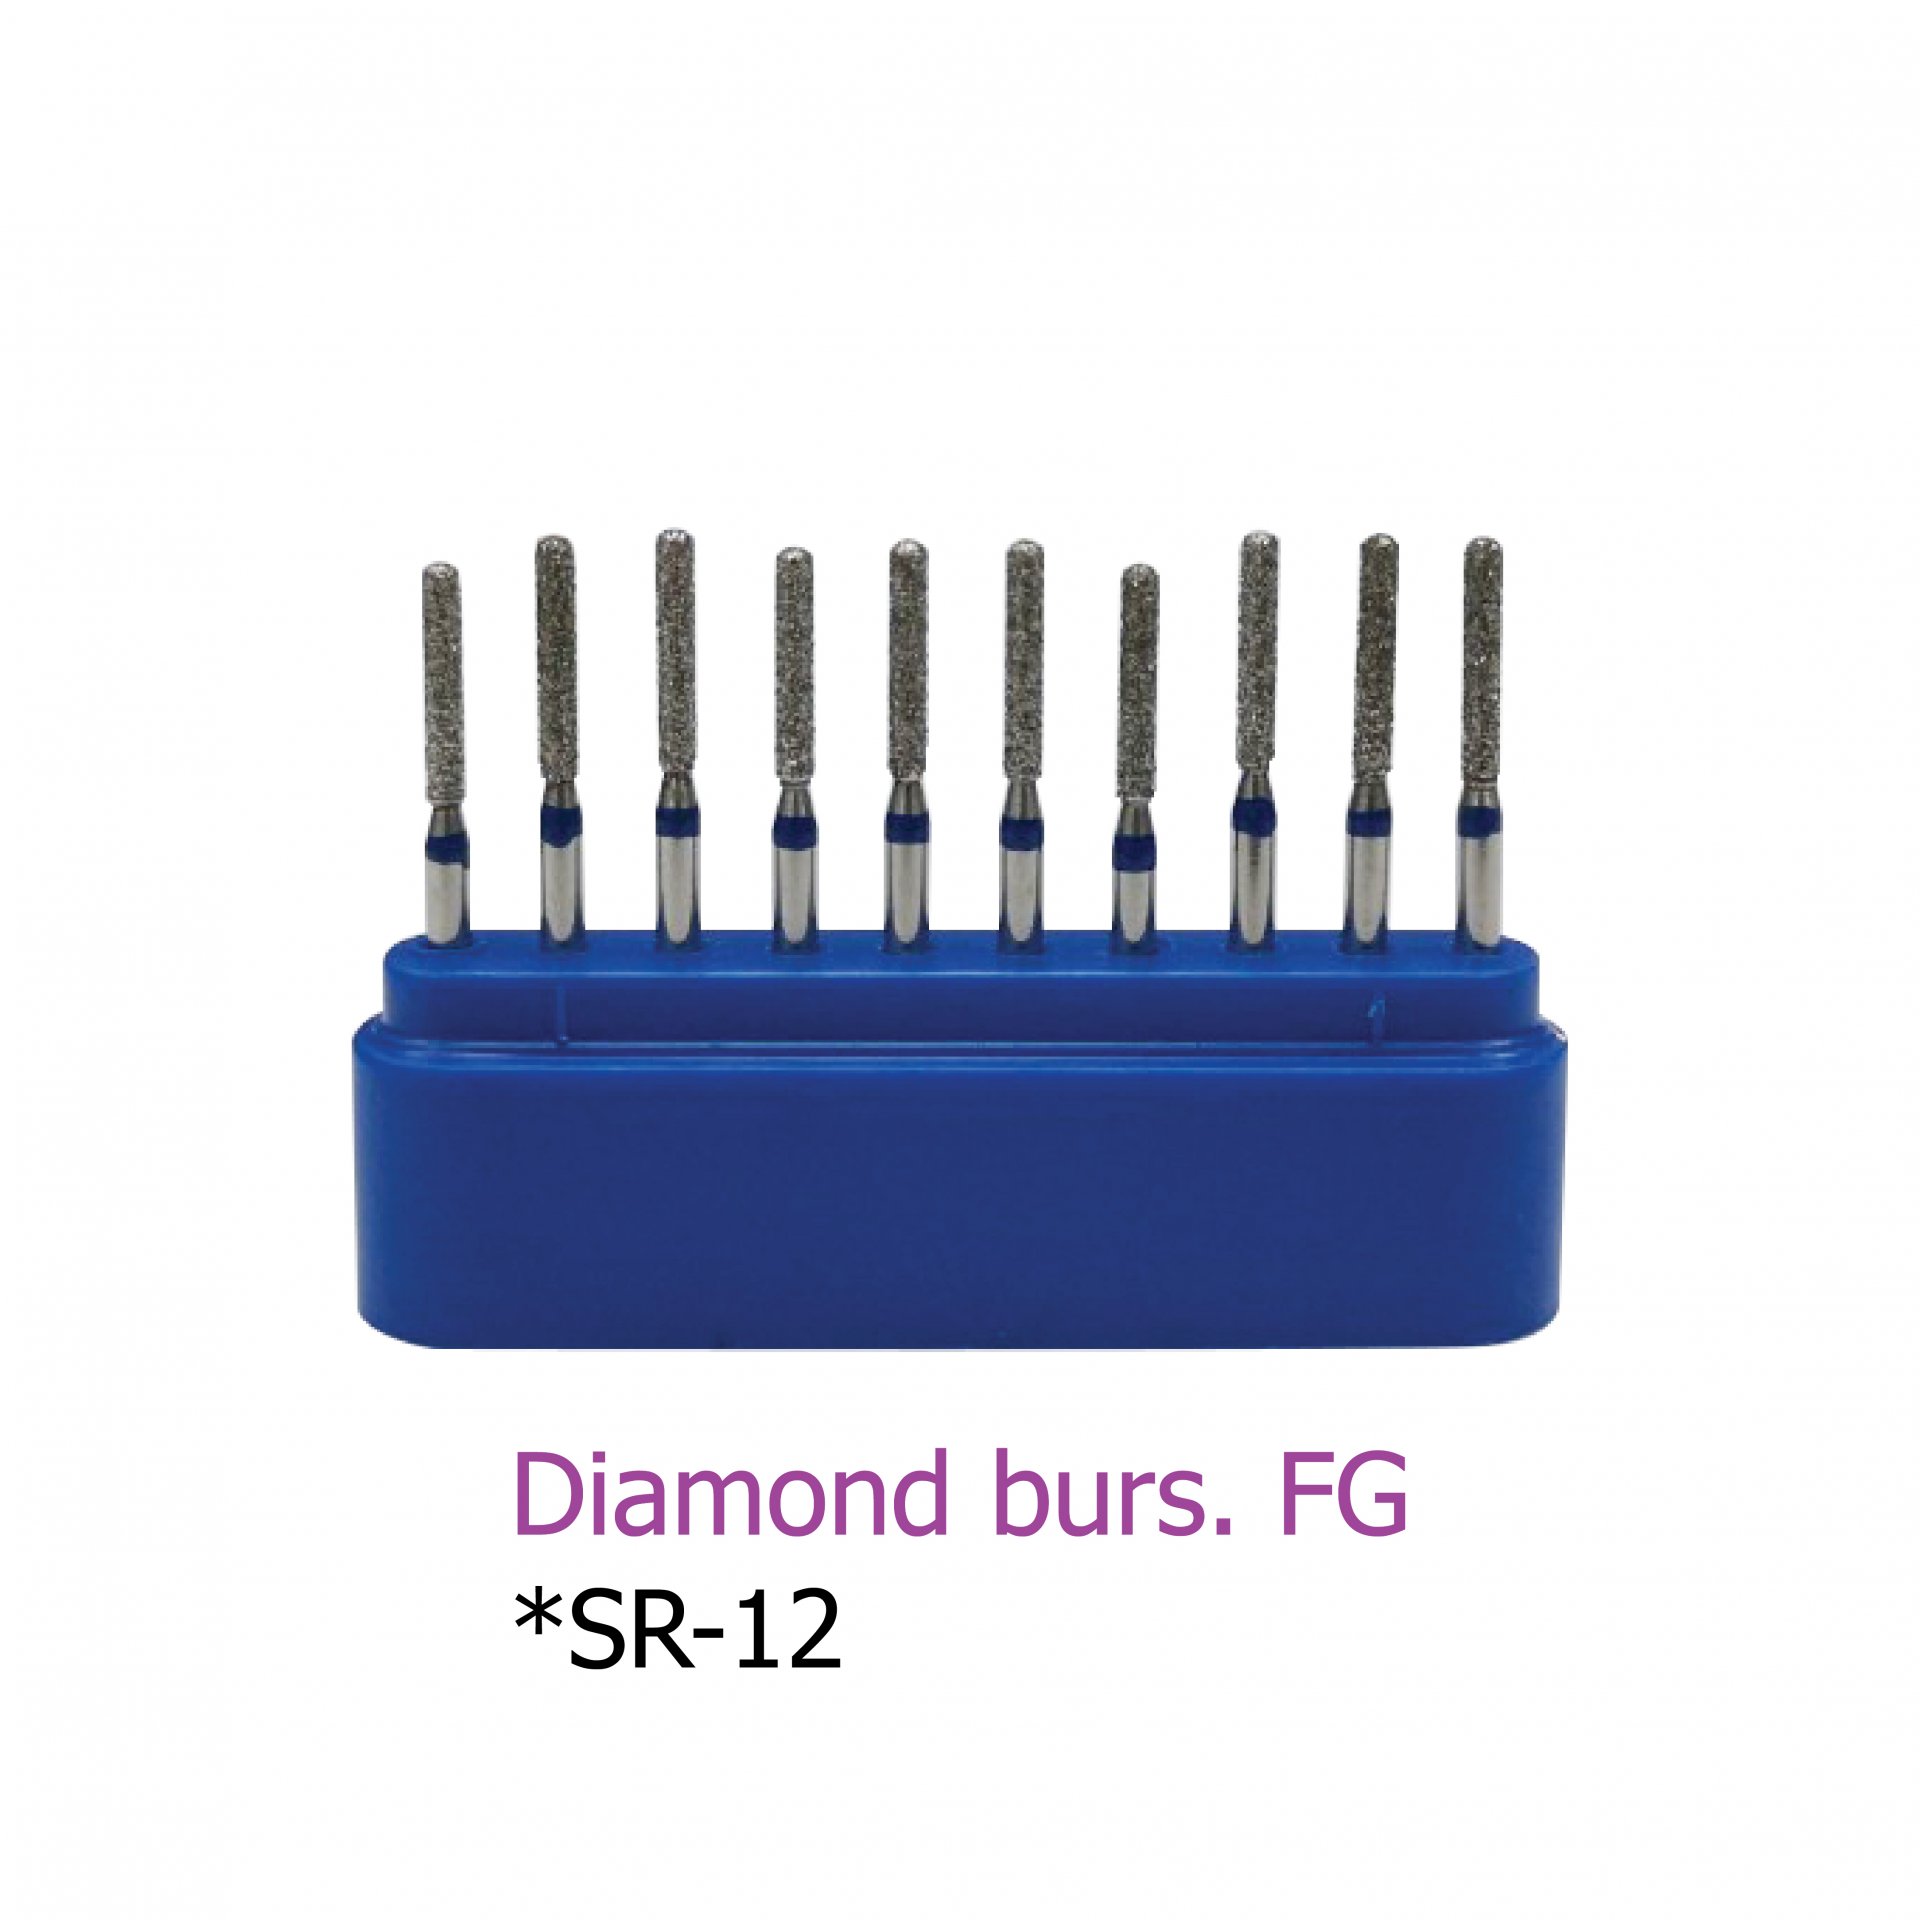 Diamond burs. FG *SR-12